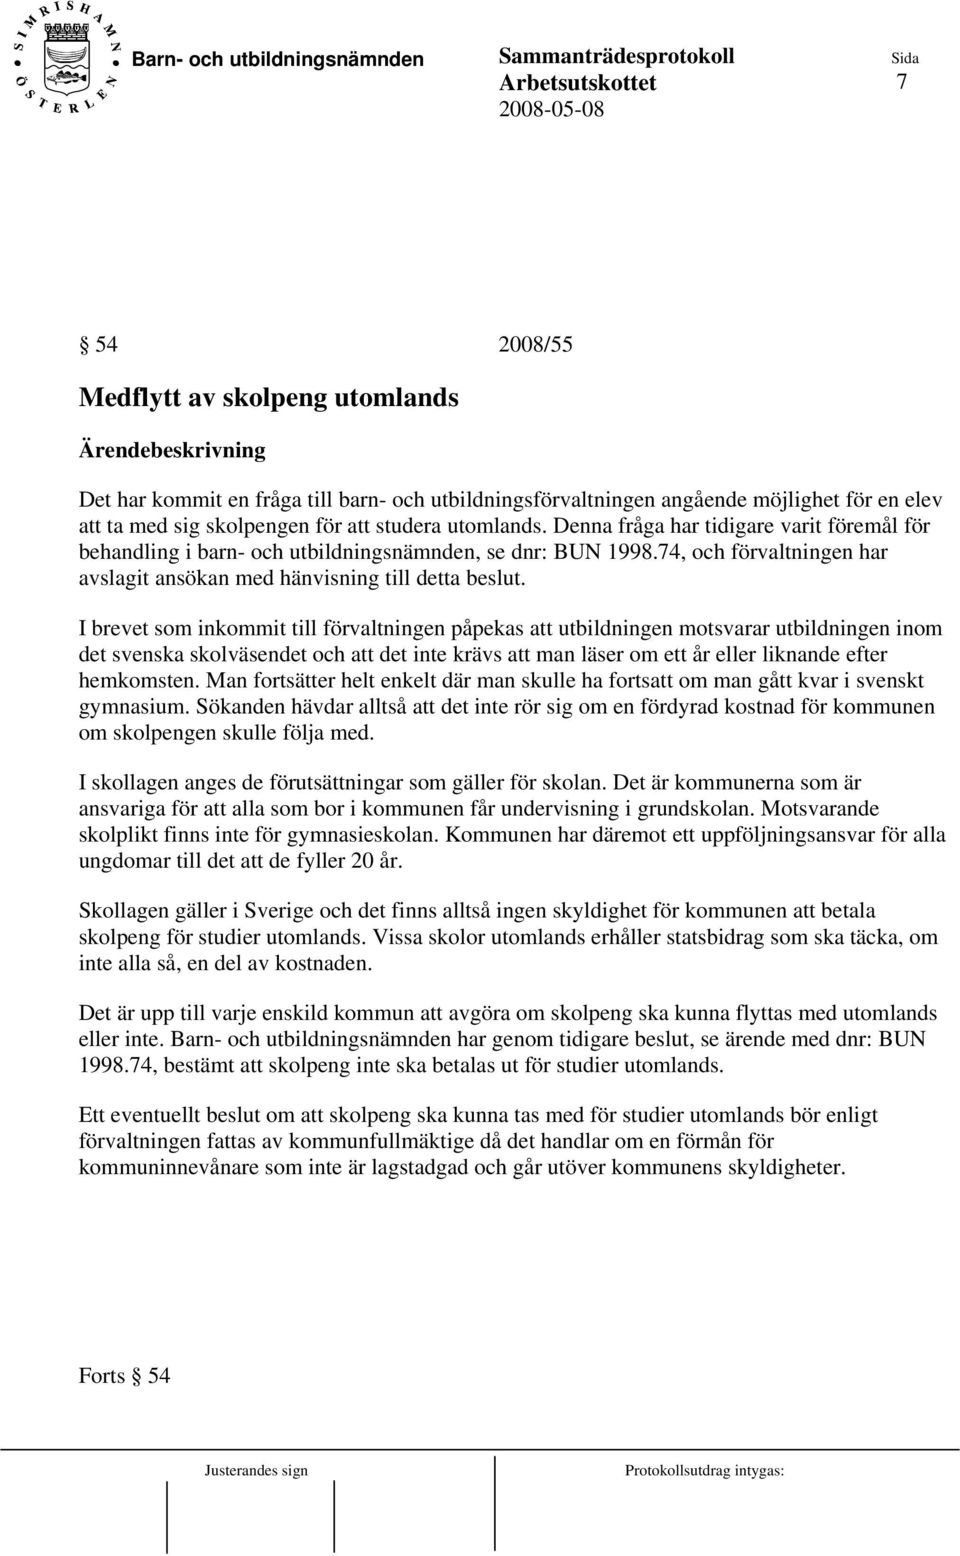 I brevet som inkommit till förvaltningen påpekas att utbildningen motsvarar utbildningen inom det svenska skolväsendet och att det inte krävs att man läser om ett år eller liknande efter hemkomsten.